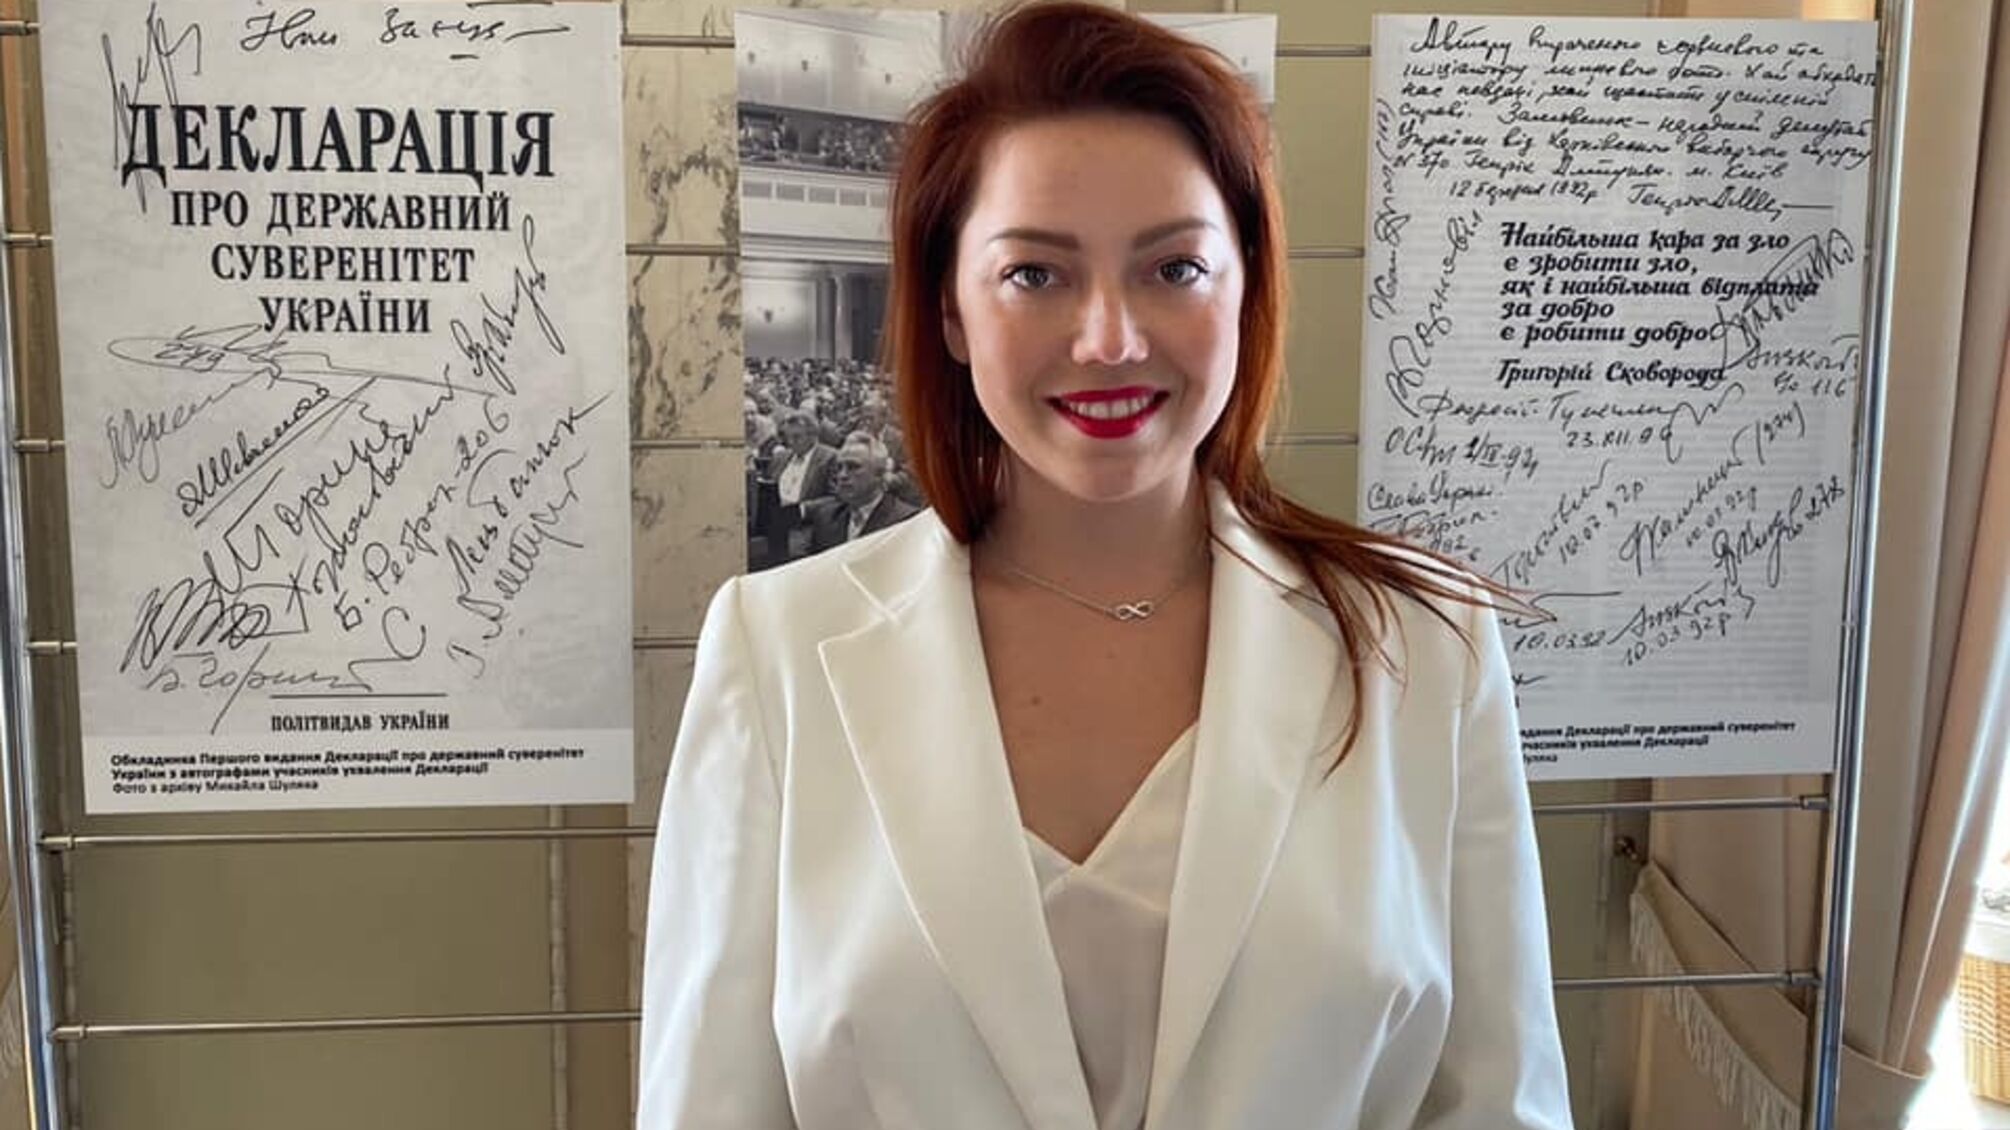 Нардепка з 'Батьківщини' вигуляла аутфіт у дві зарплати на Форумі молодих політиків світу